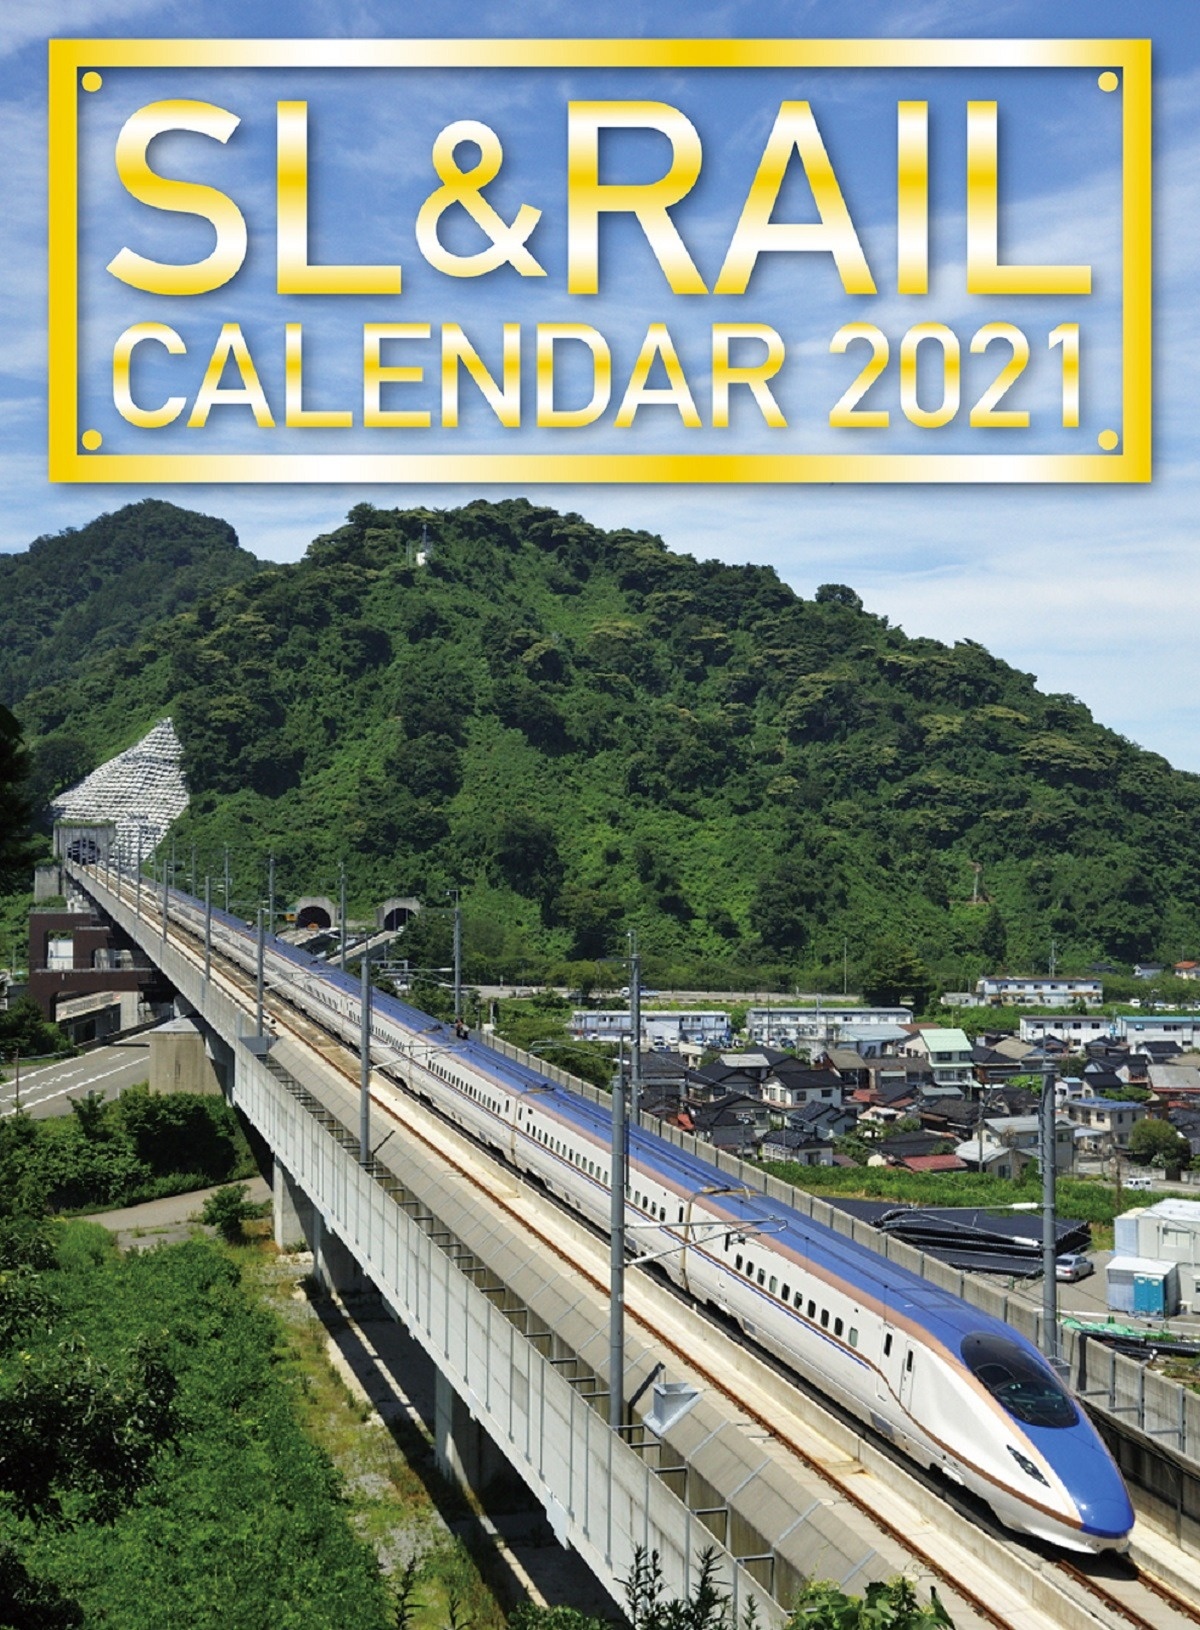 鉄道カレンダー の鉄分が今回も高い E261系 サフィール踊り子 やn700s確認試験車も 21年版 トレたび 鉄道 旅行情報サイト